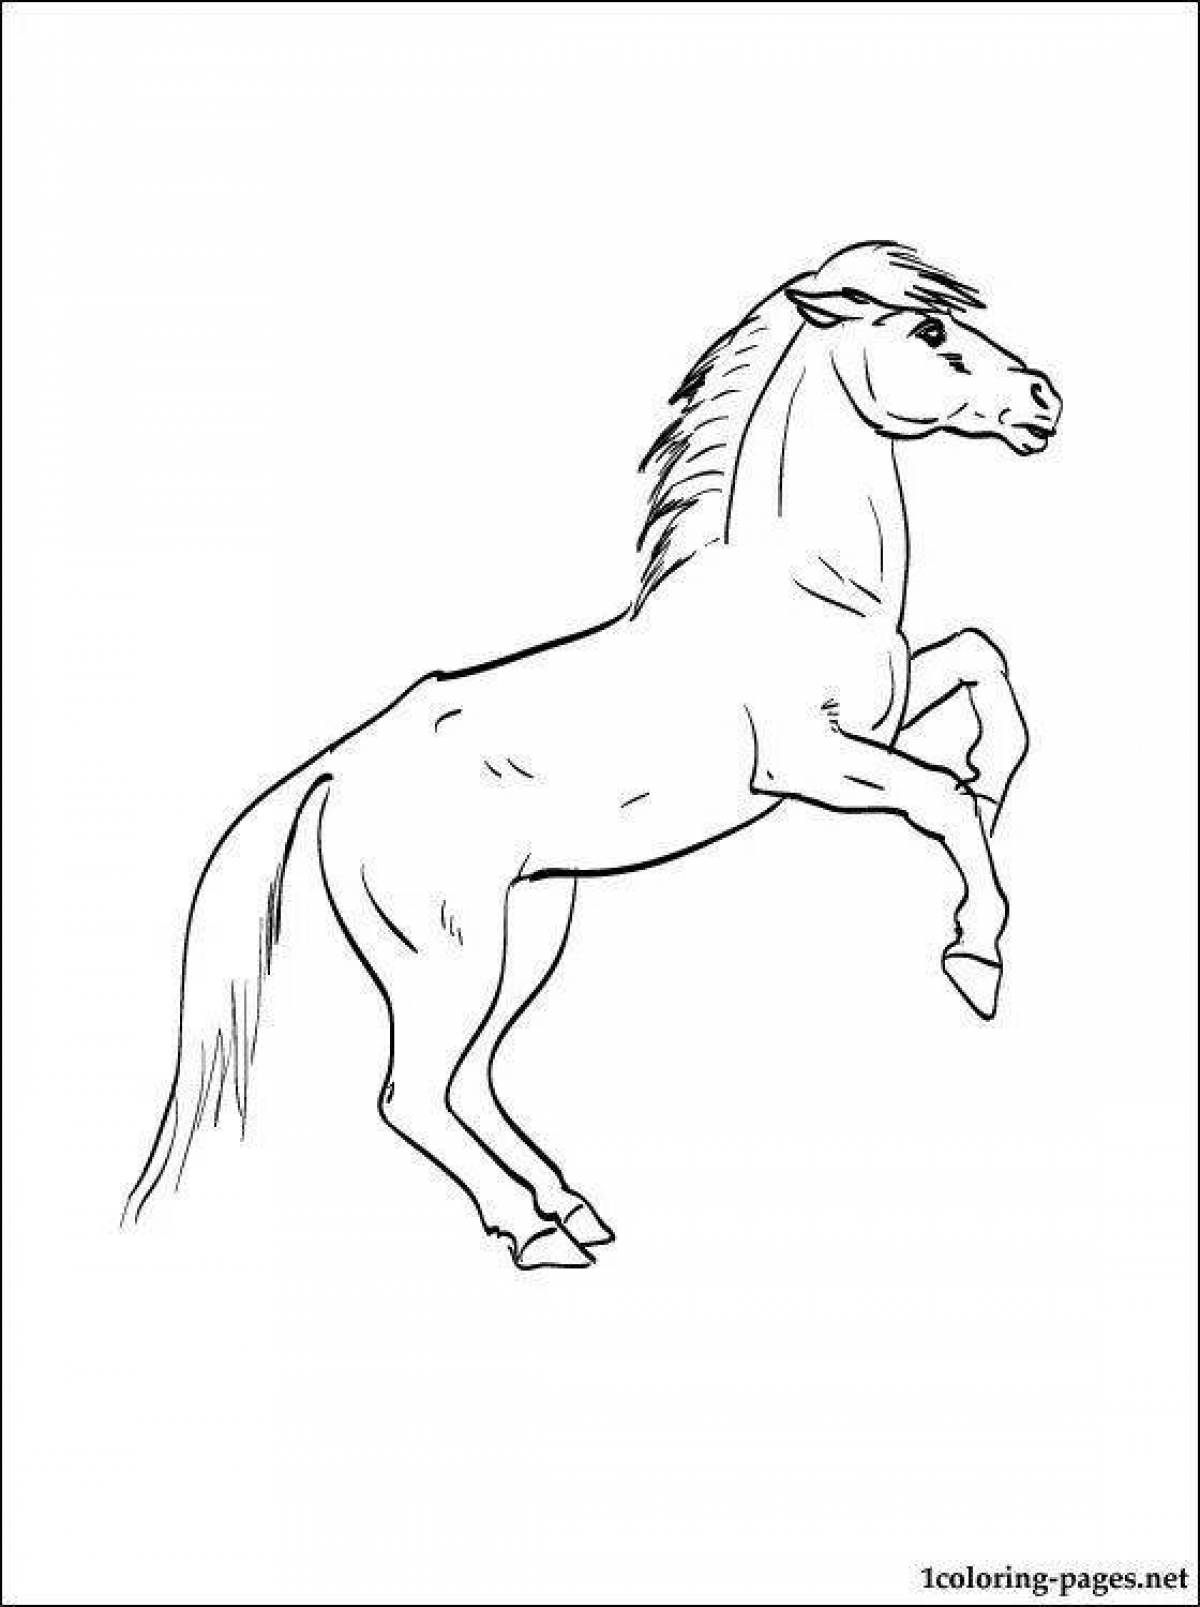 Раскраска гениальной лошади пржевальского